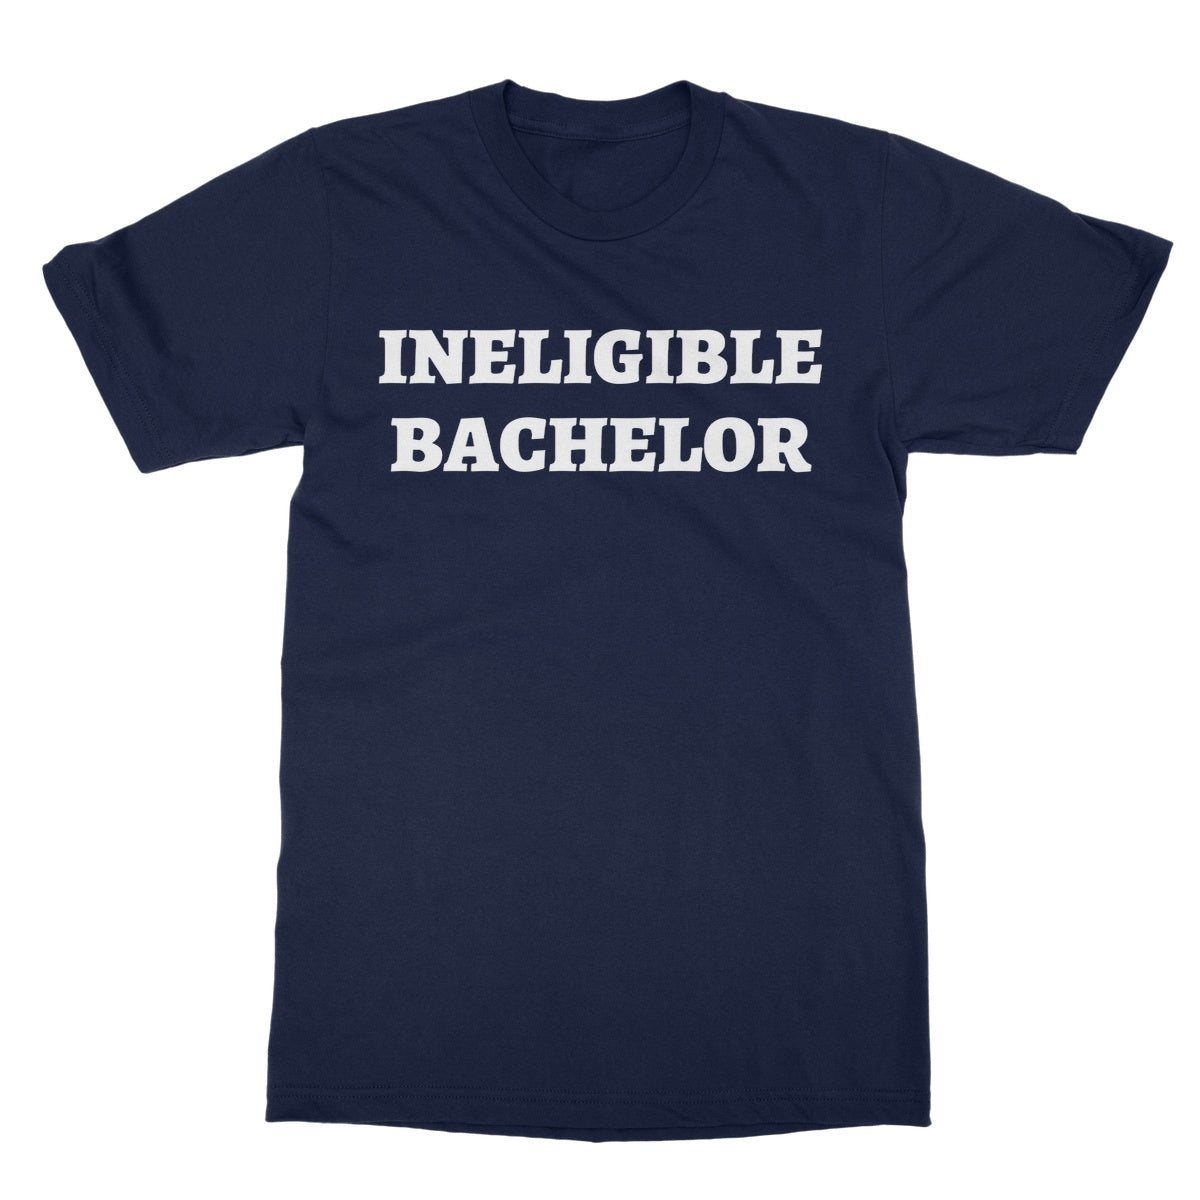 ineligible bachelor t shirt navy